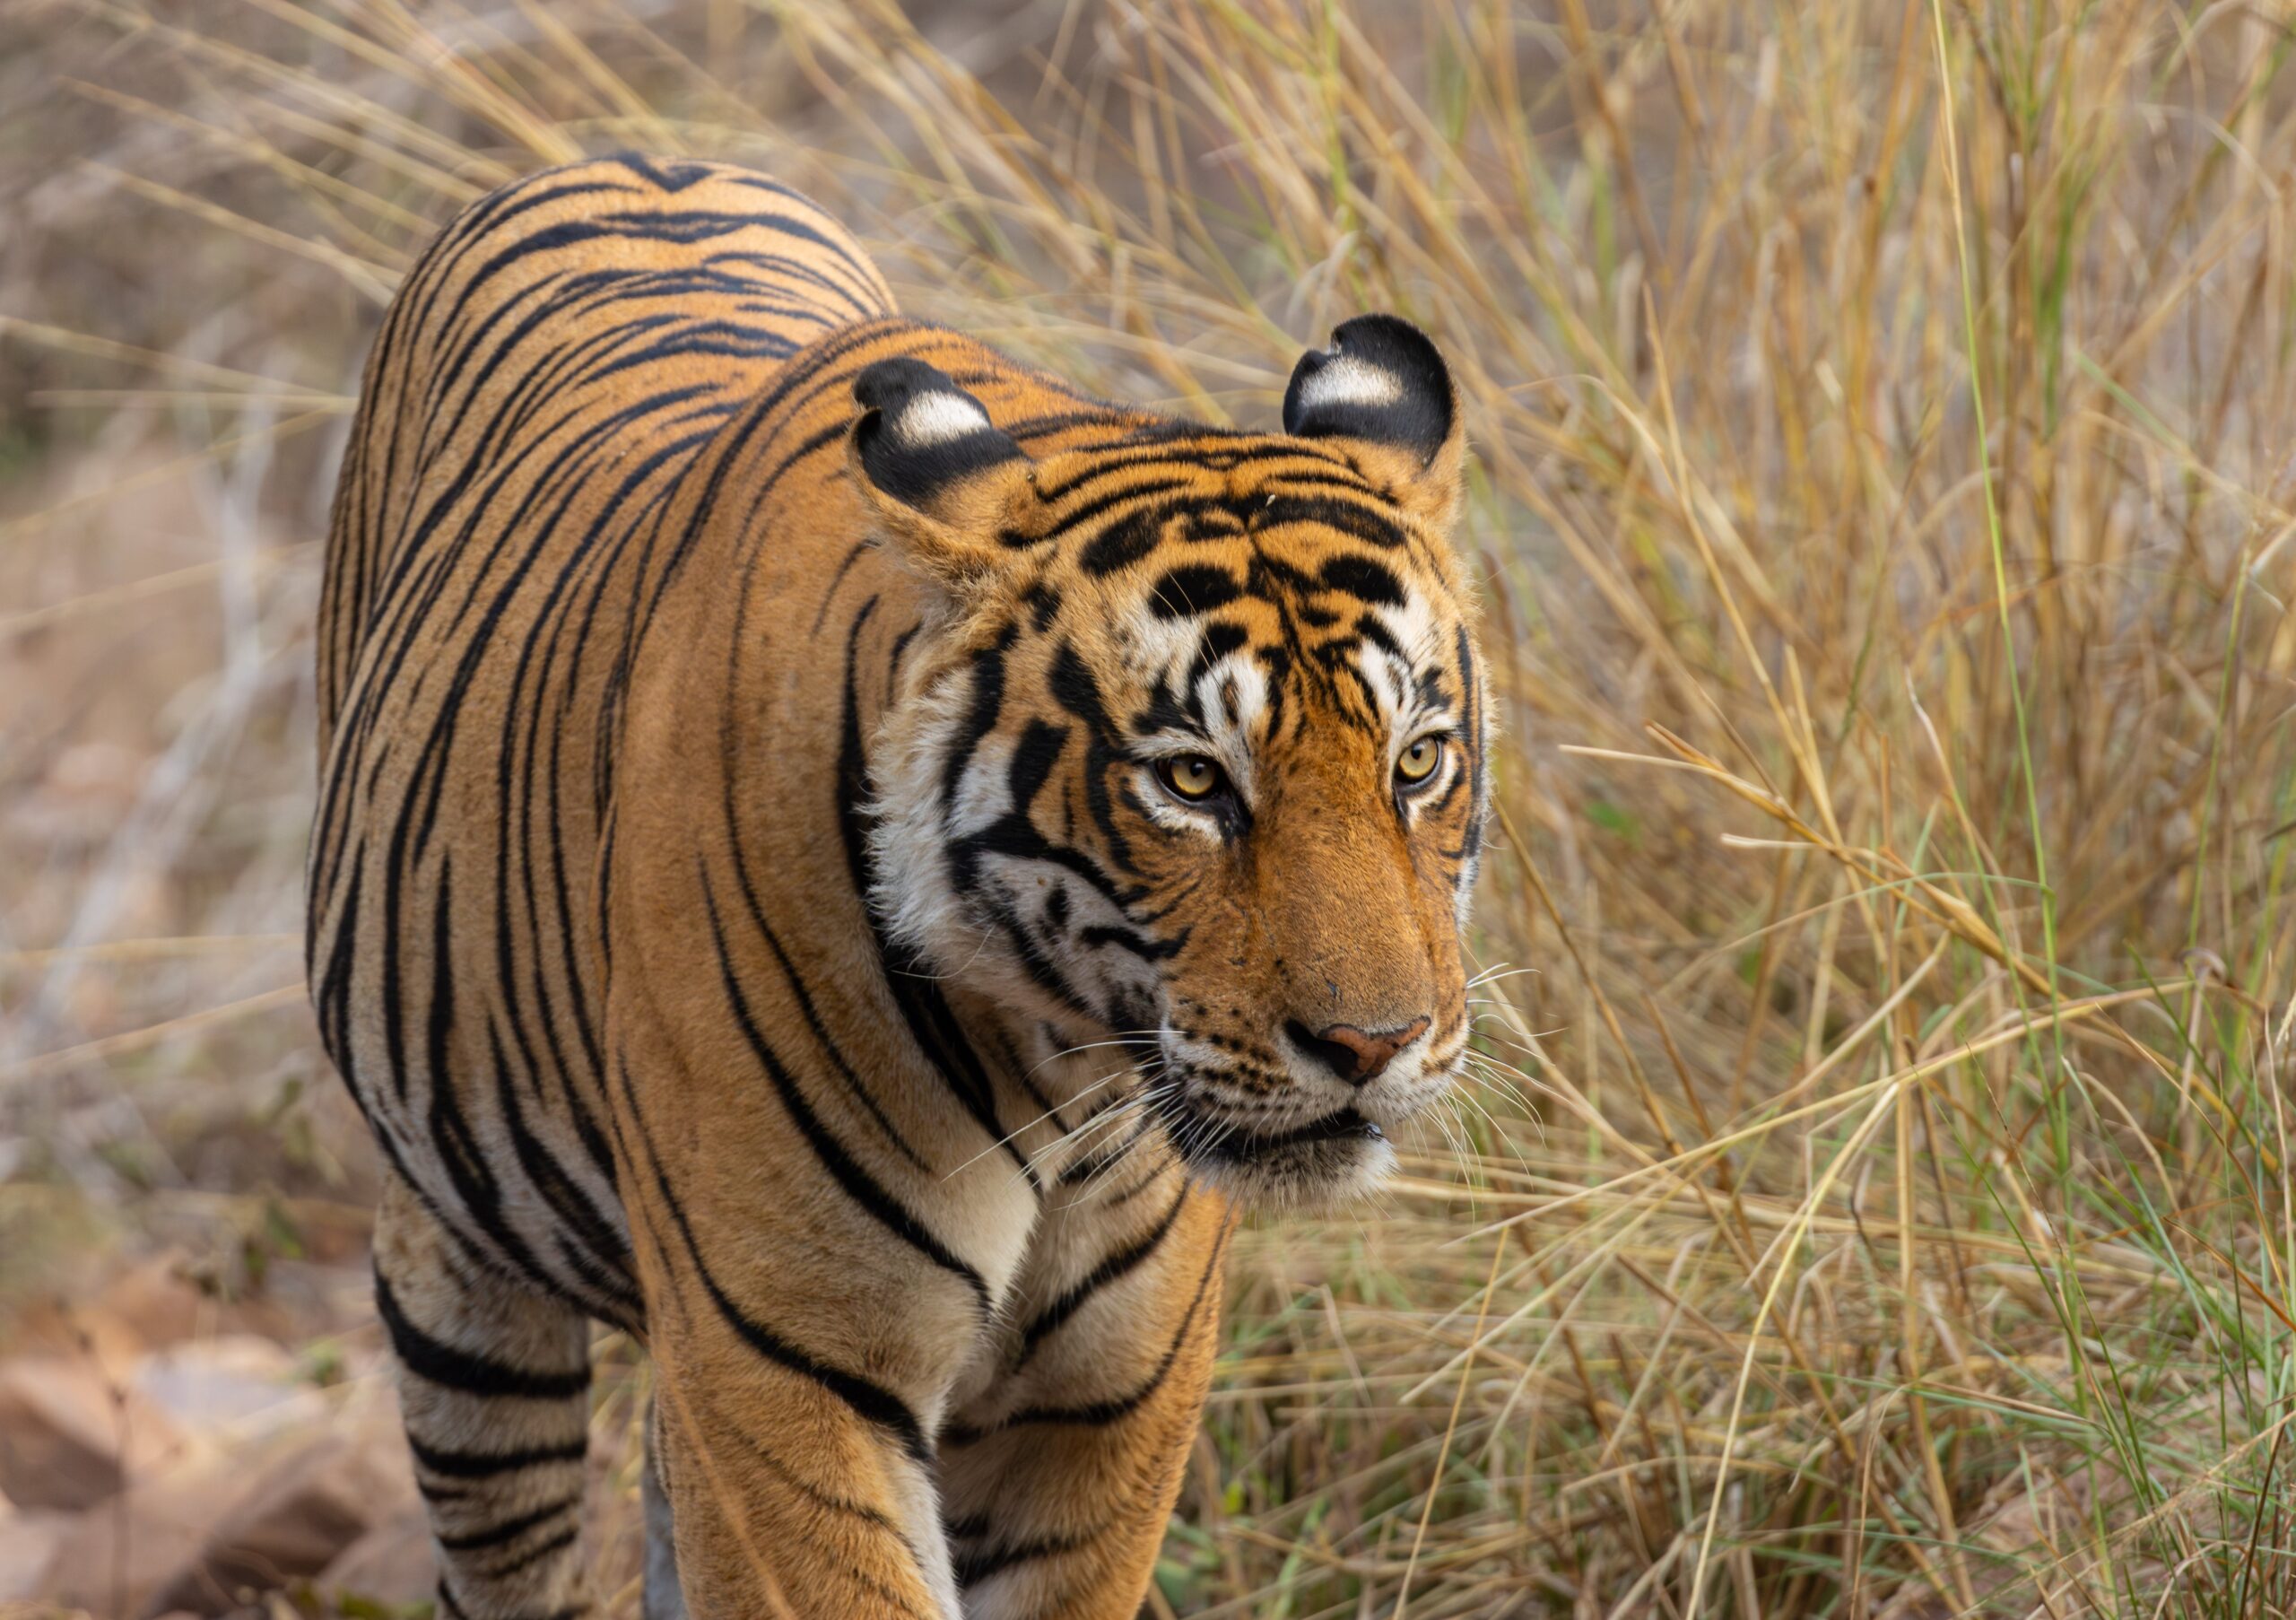 Tiger © Fernando Enrique Navarrete